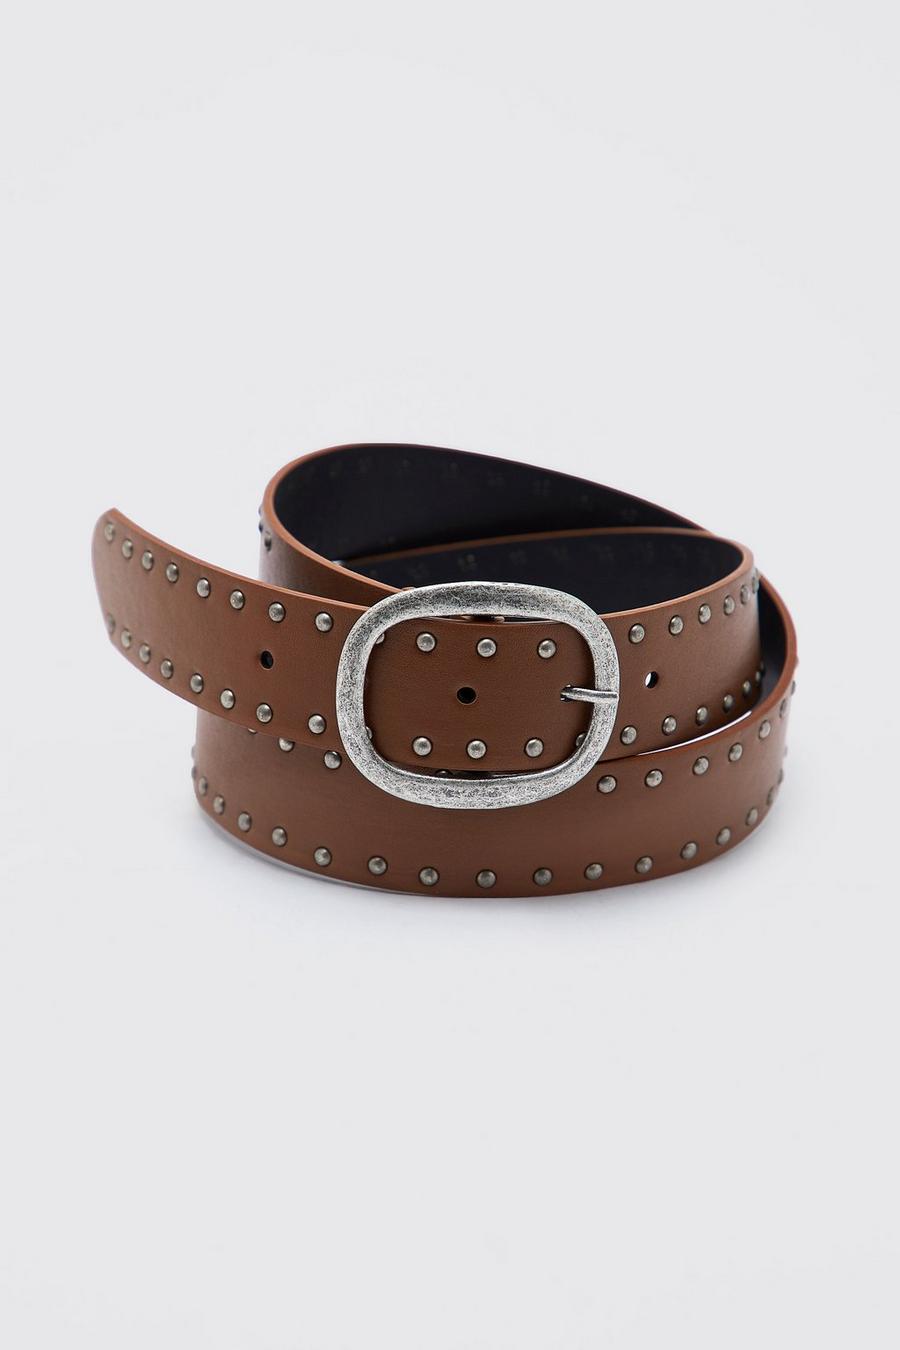 Tan marrone Leather Look Studded Belt